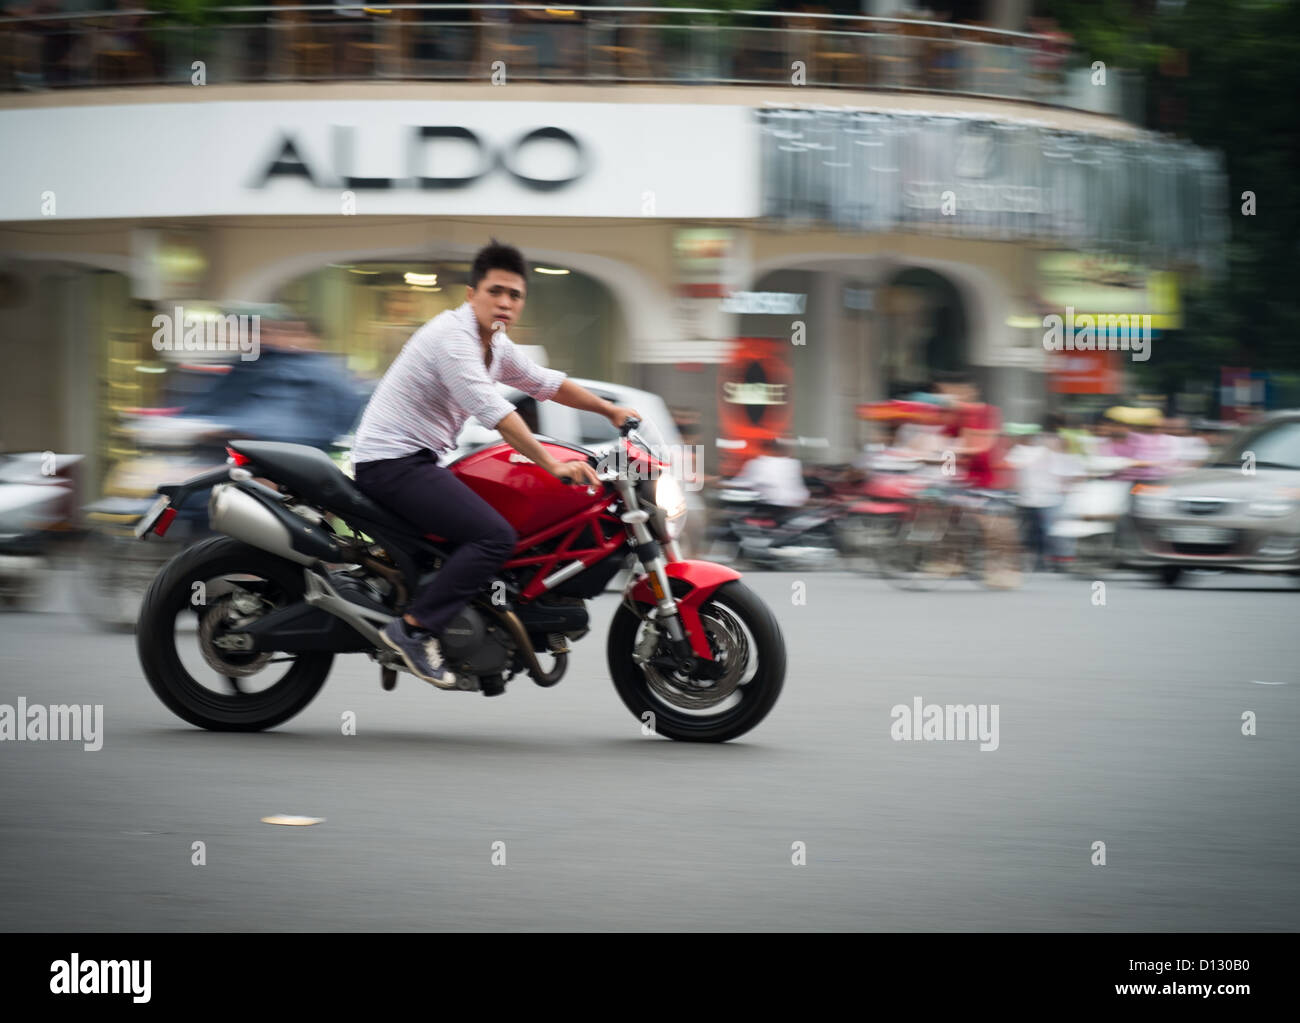 Young Asia maschio su moto senza casco durante le ore di punta in Hanoi Vietnam del Sud-est asiatico Foto Stock